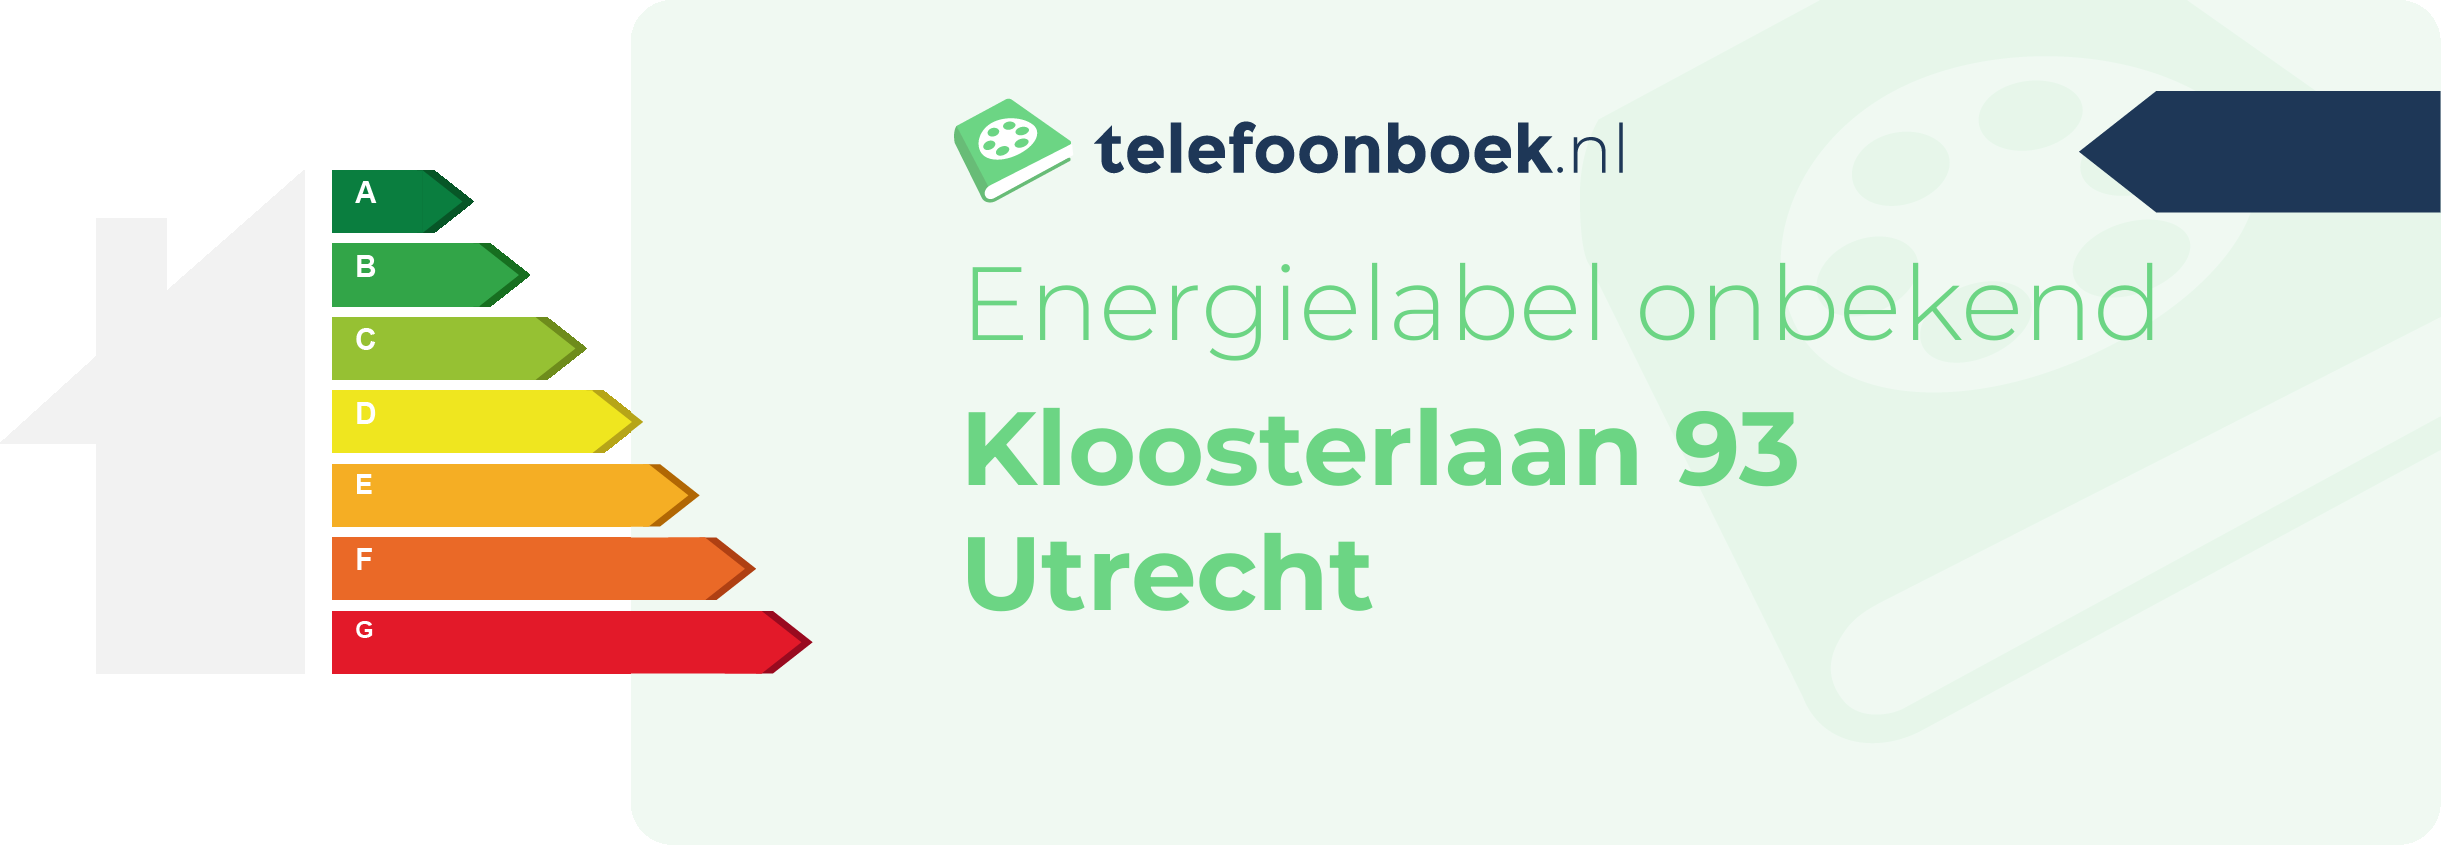 Energielabel Kloosterlaan 93 Utrecht